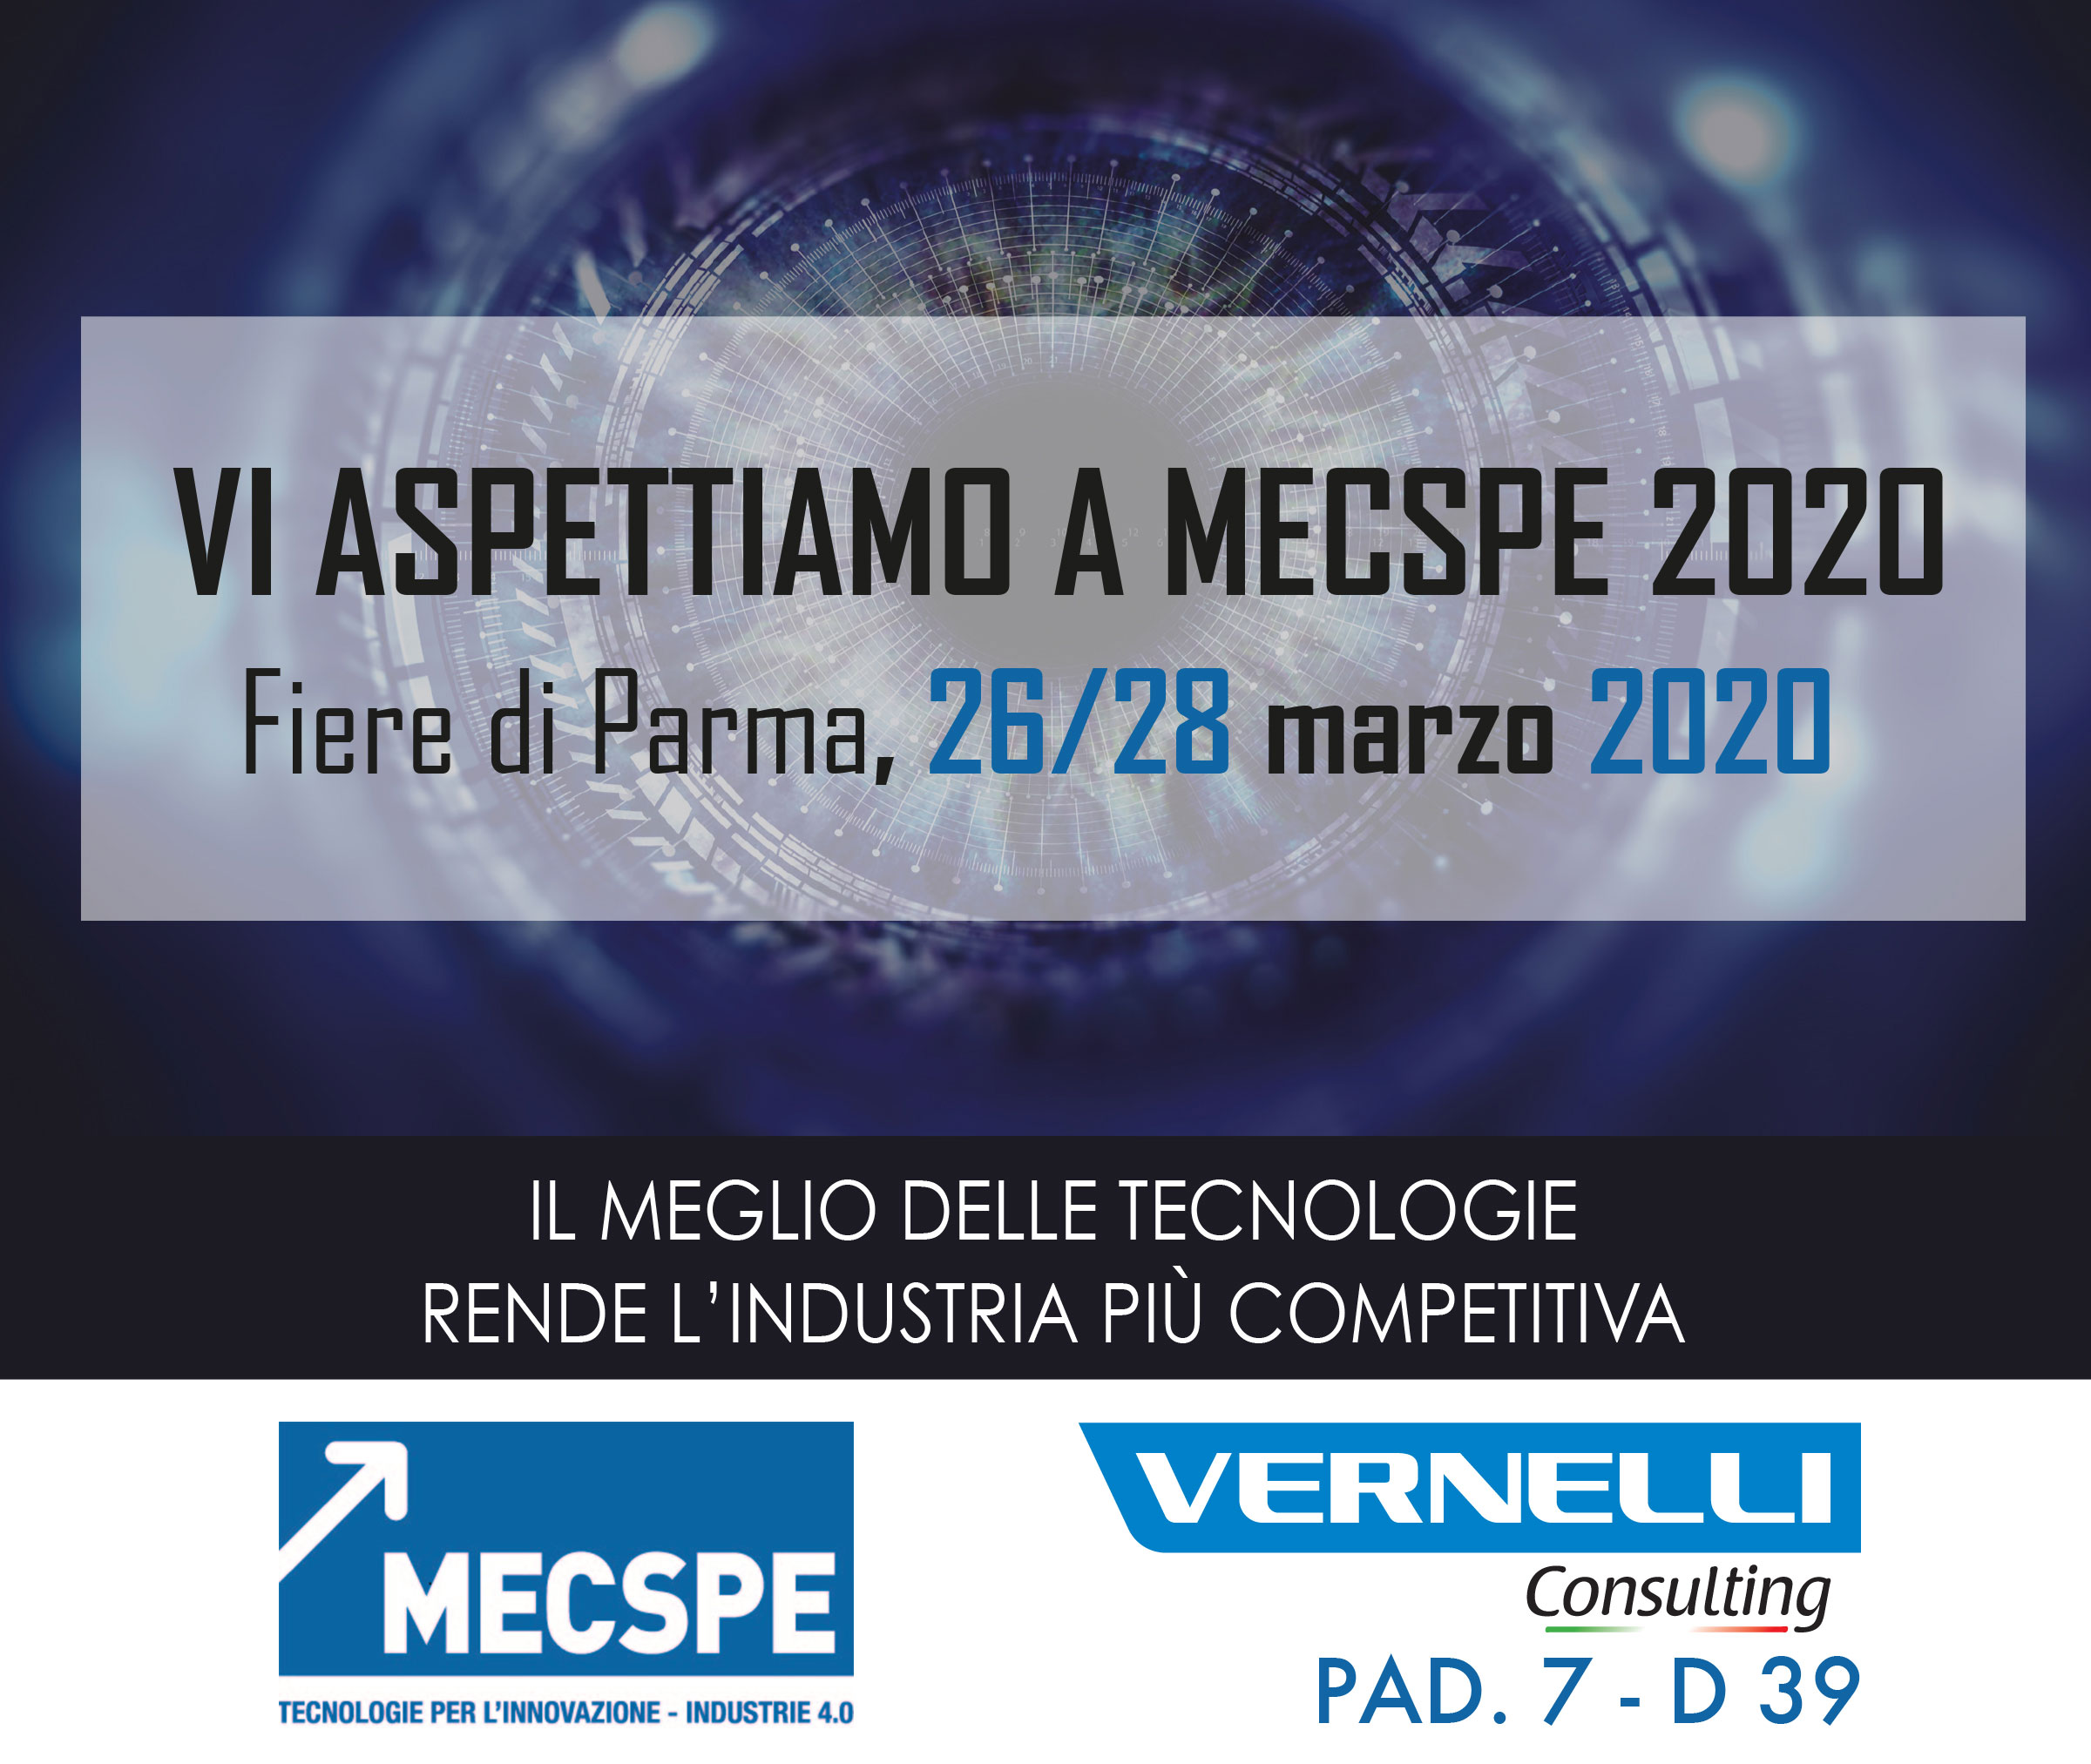 Noi ci saremo, MECSPE 2020 - VERNELLI Consulting